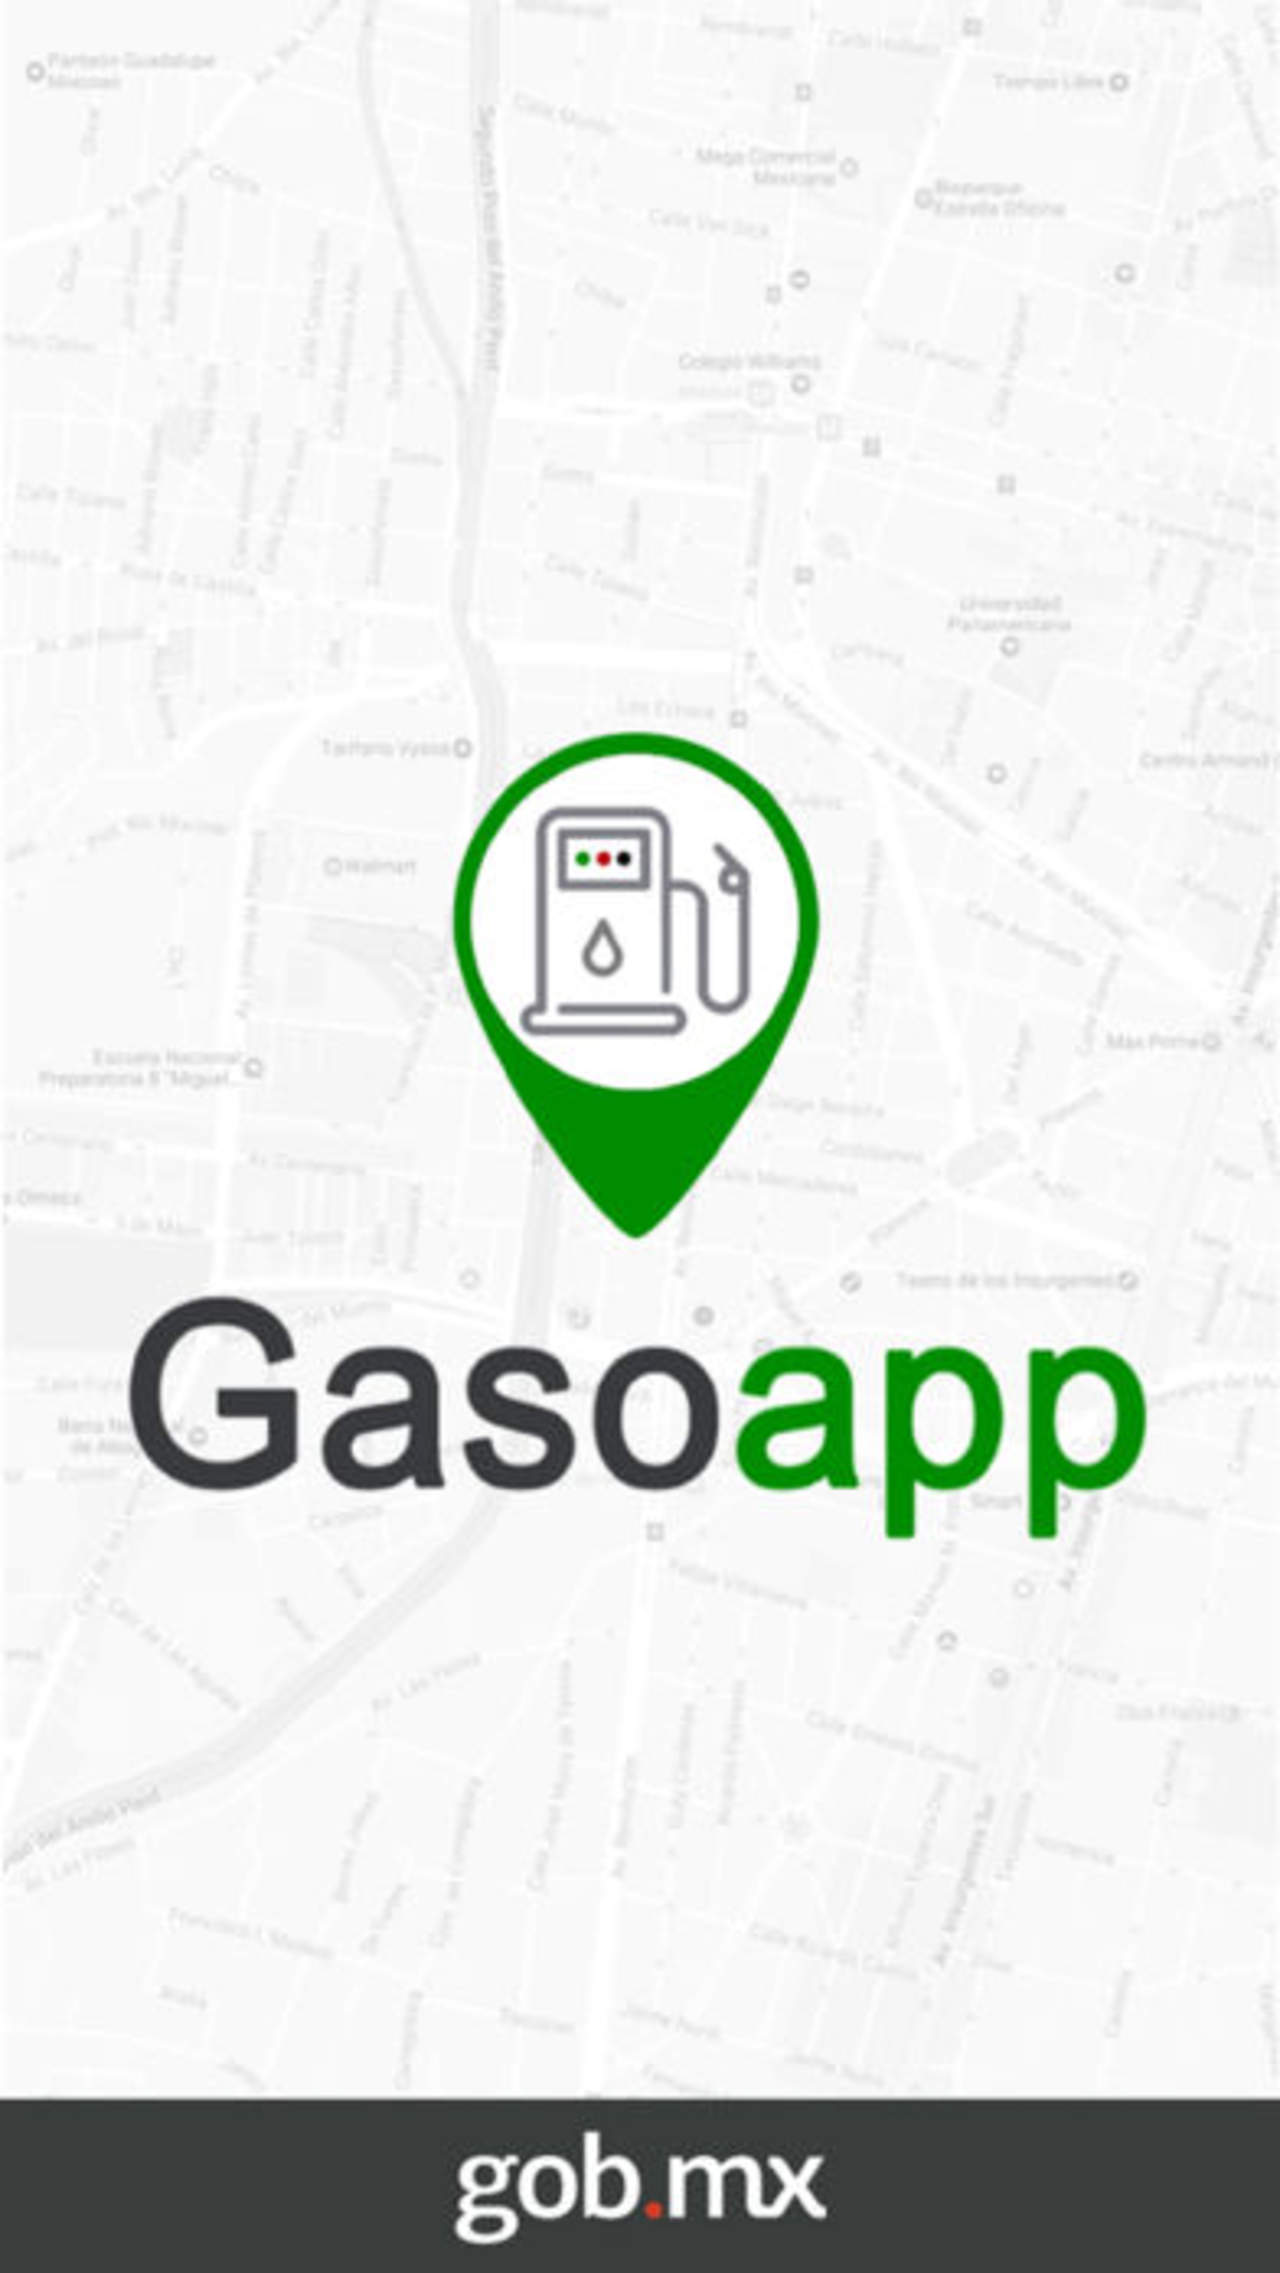 Tras la liberación de precios de las gasolinas en el país, los interesados podrán comparar los precios en estaciones de servicio con la aplicación Gasoapp. (ESPECIAL)